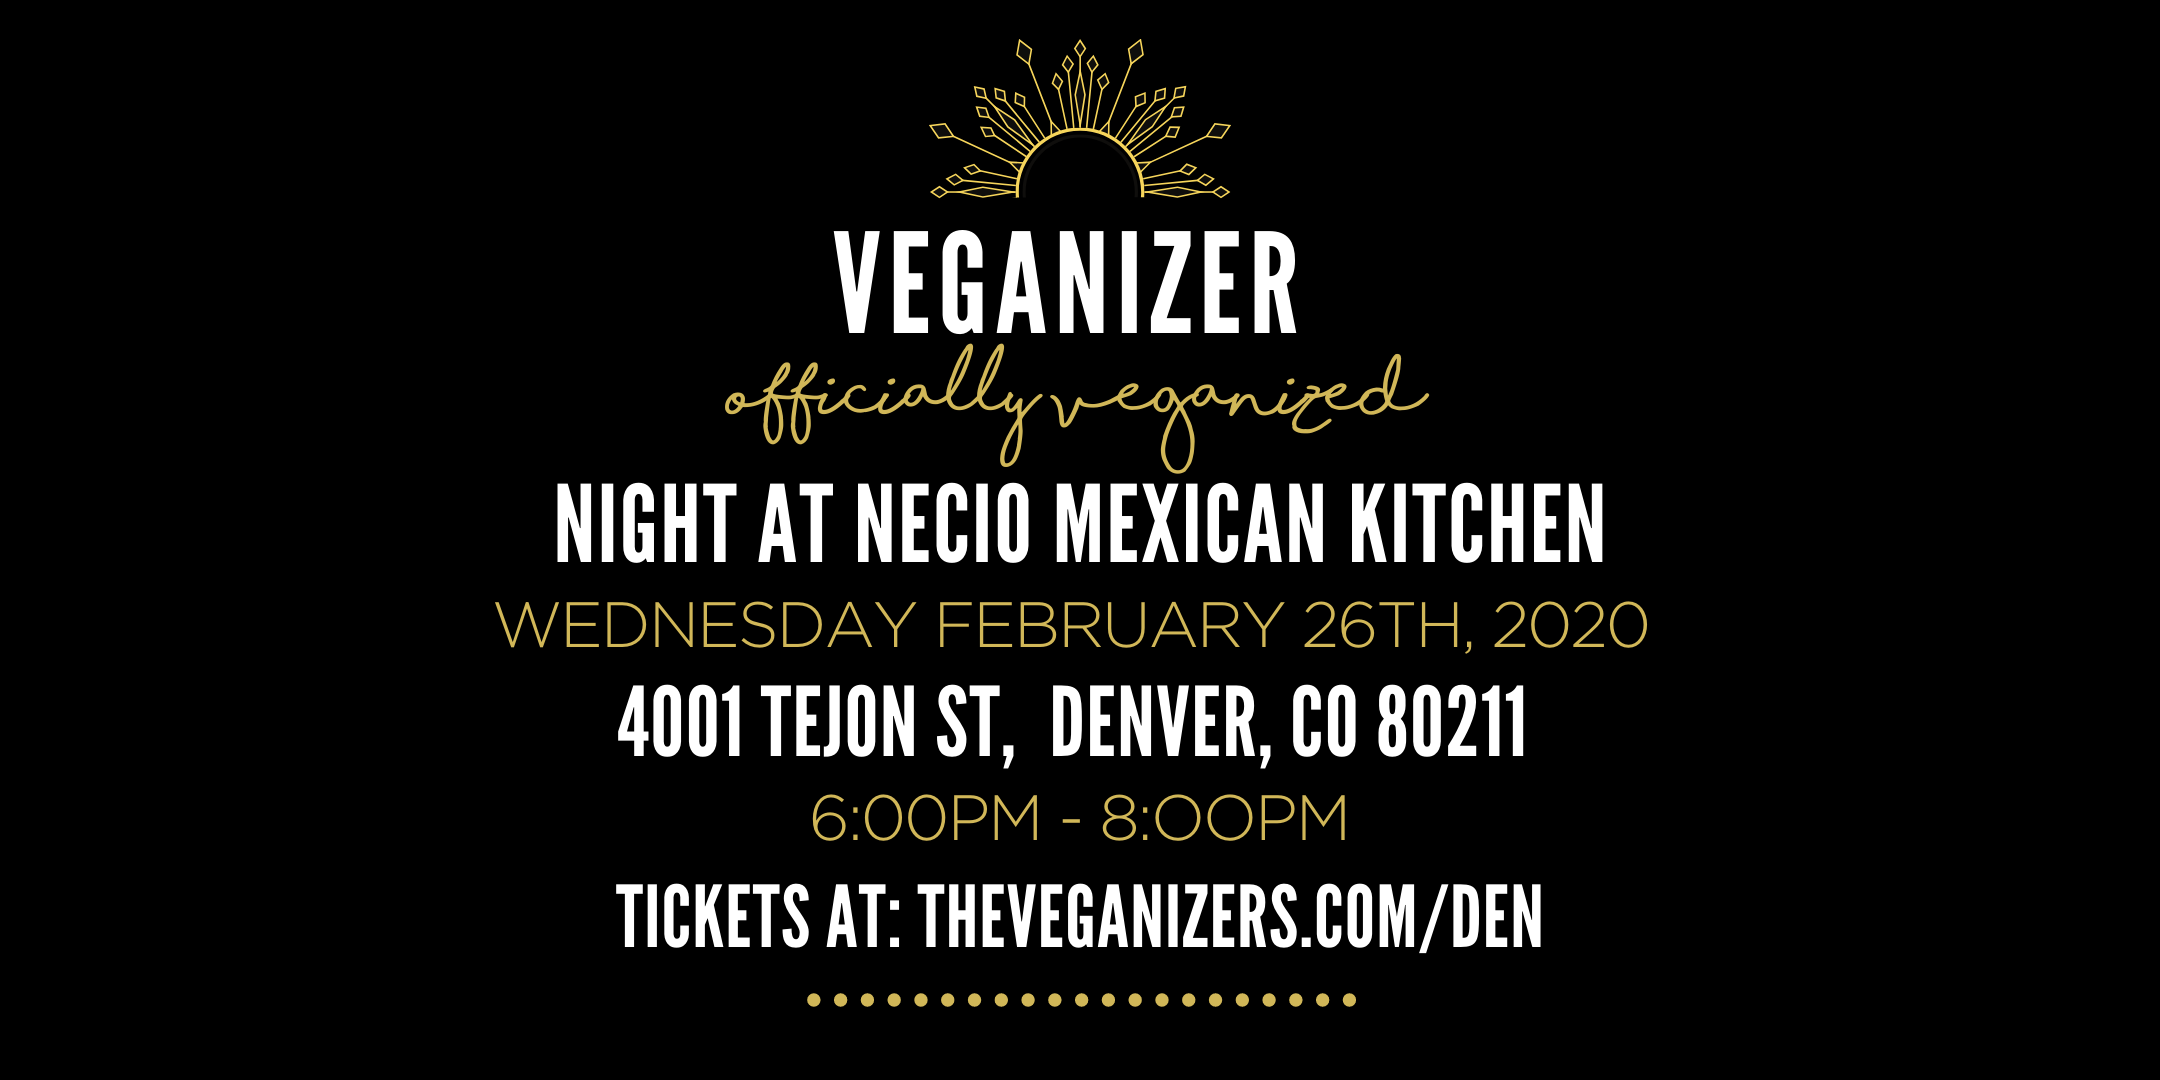 Veganizer Pop Up Dinner at Necio Mexican Kitchen